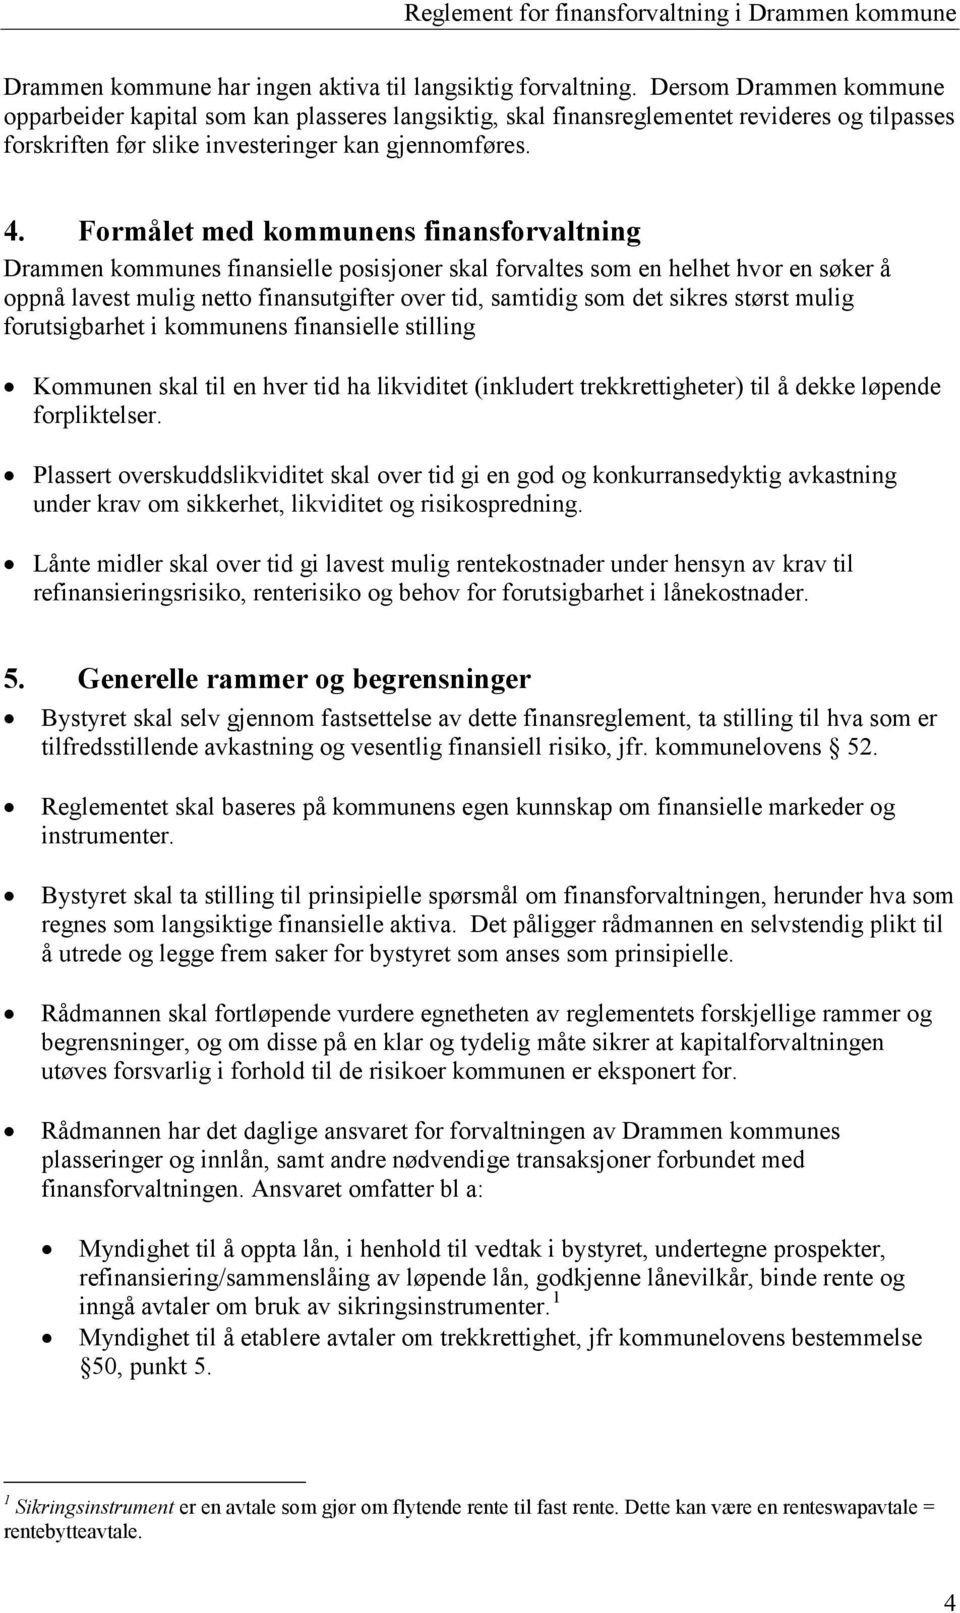 Formålet med kommunens finansforvaltning Drammen kommunes finansielle posisjoner skal forvaltes som en helhet hvor en søker å oppnå lavest mulig netto finansutgifter over tid, samtidig som det sikres